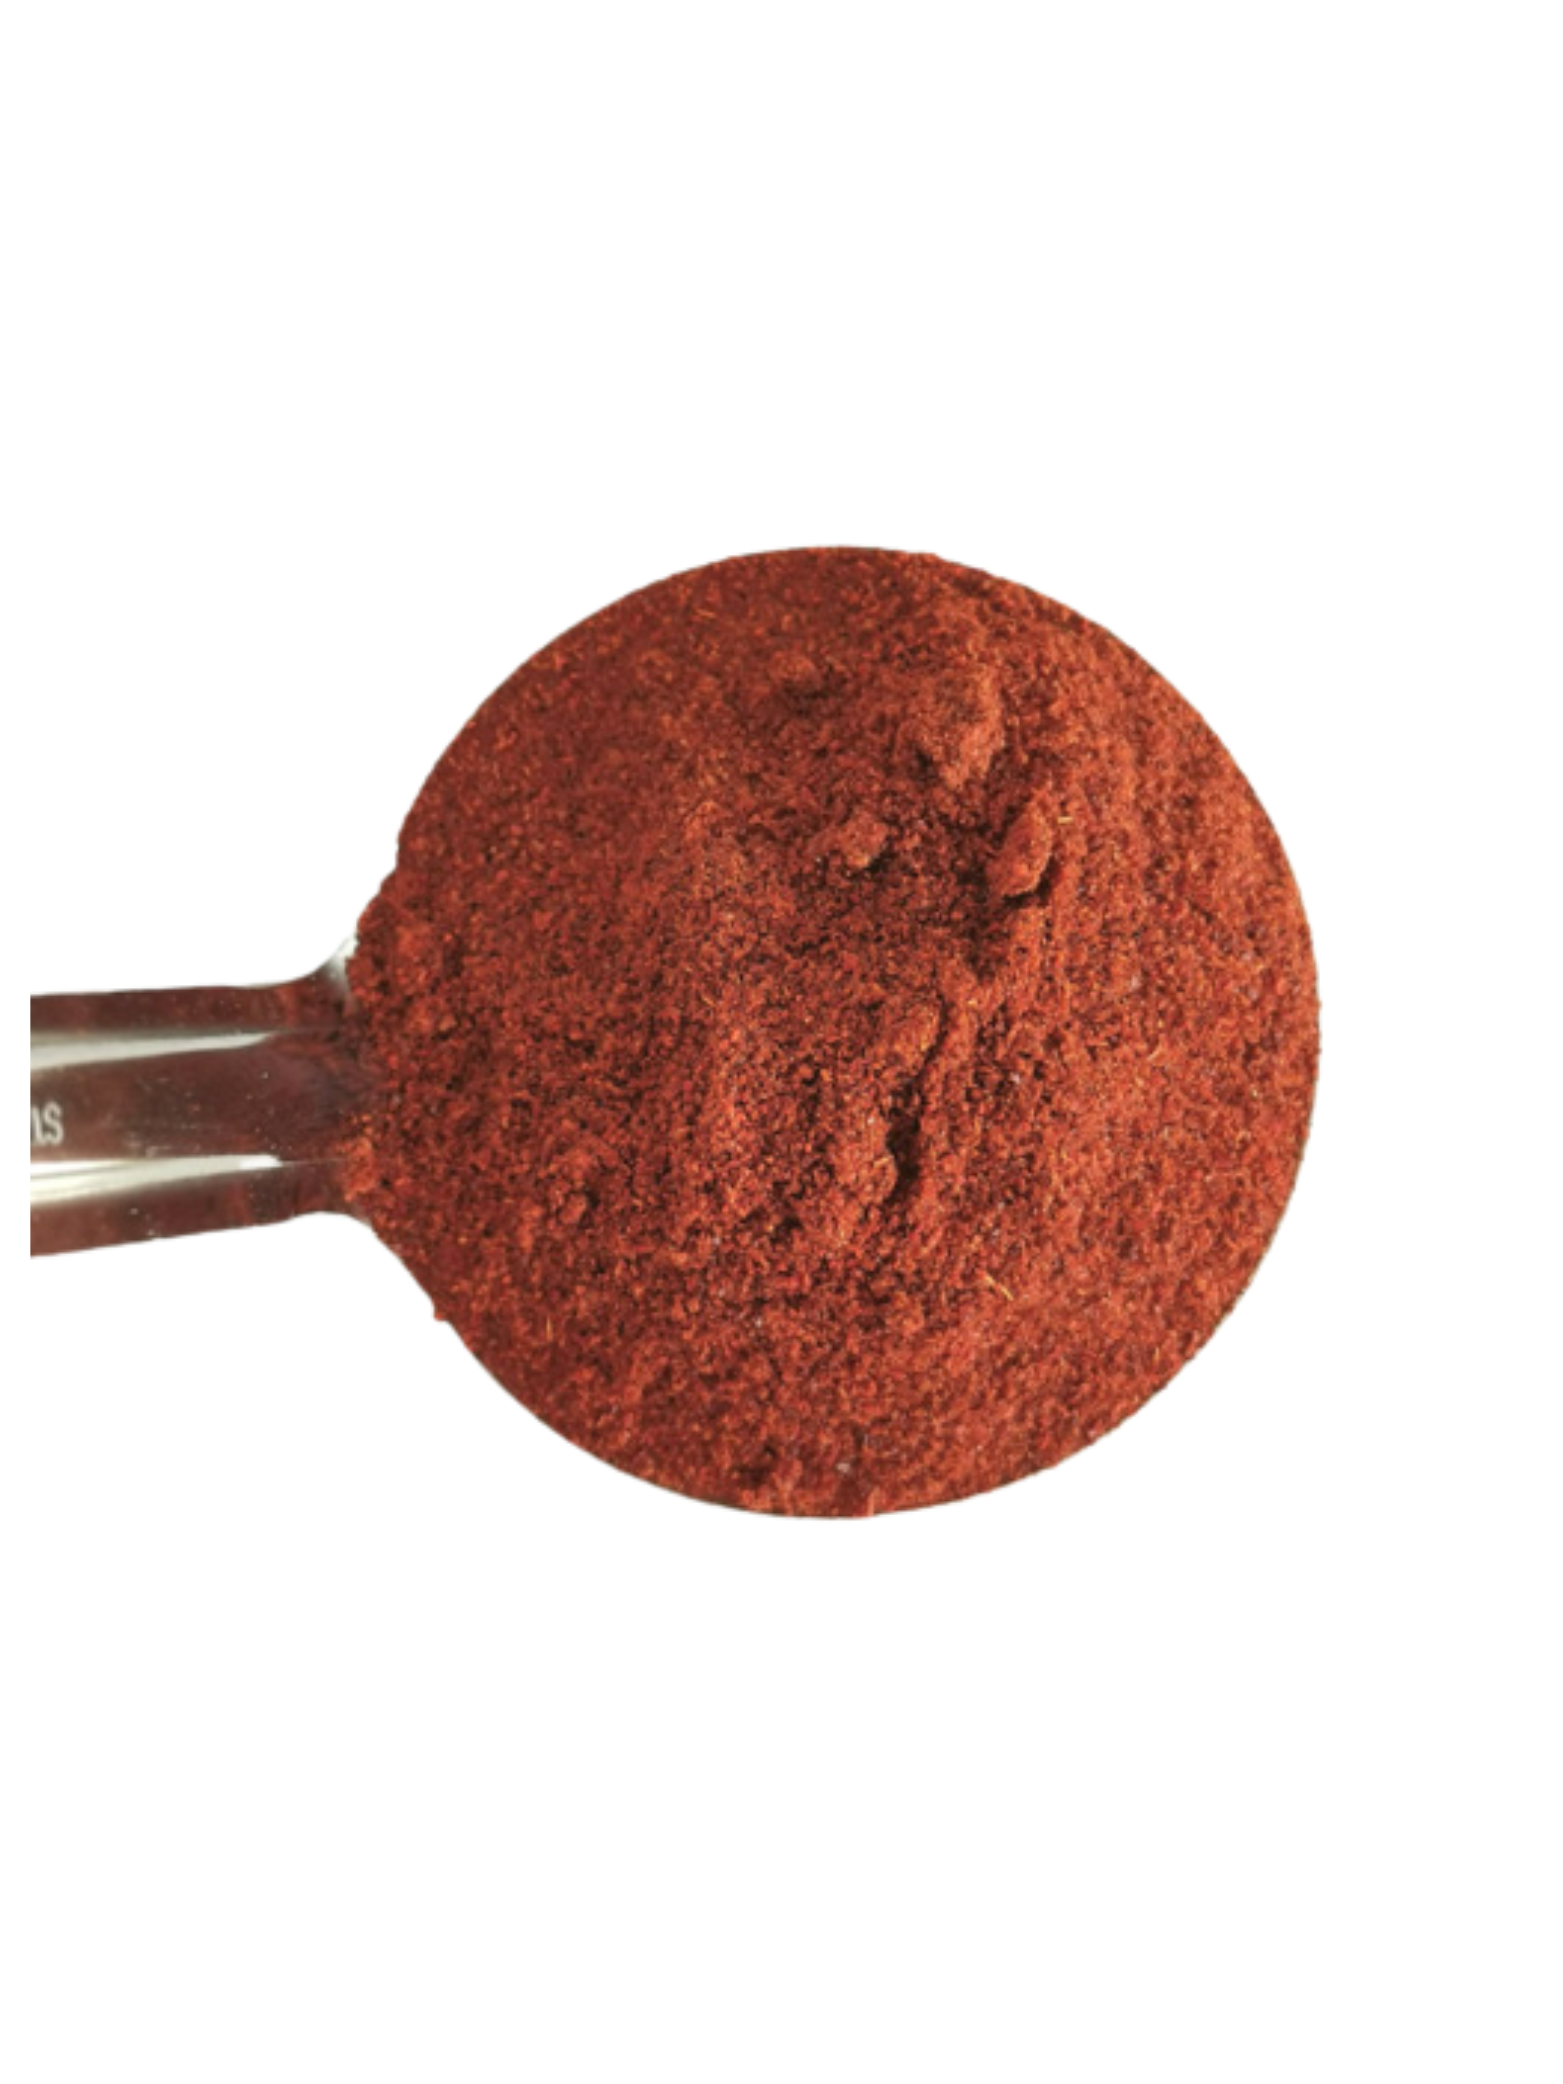 Organic Chilli Powder (mild)